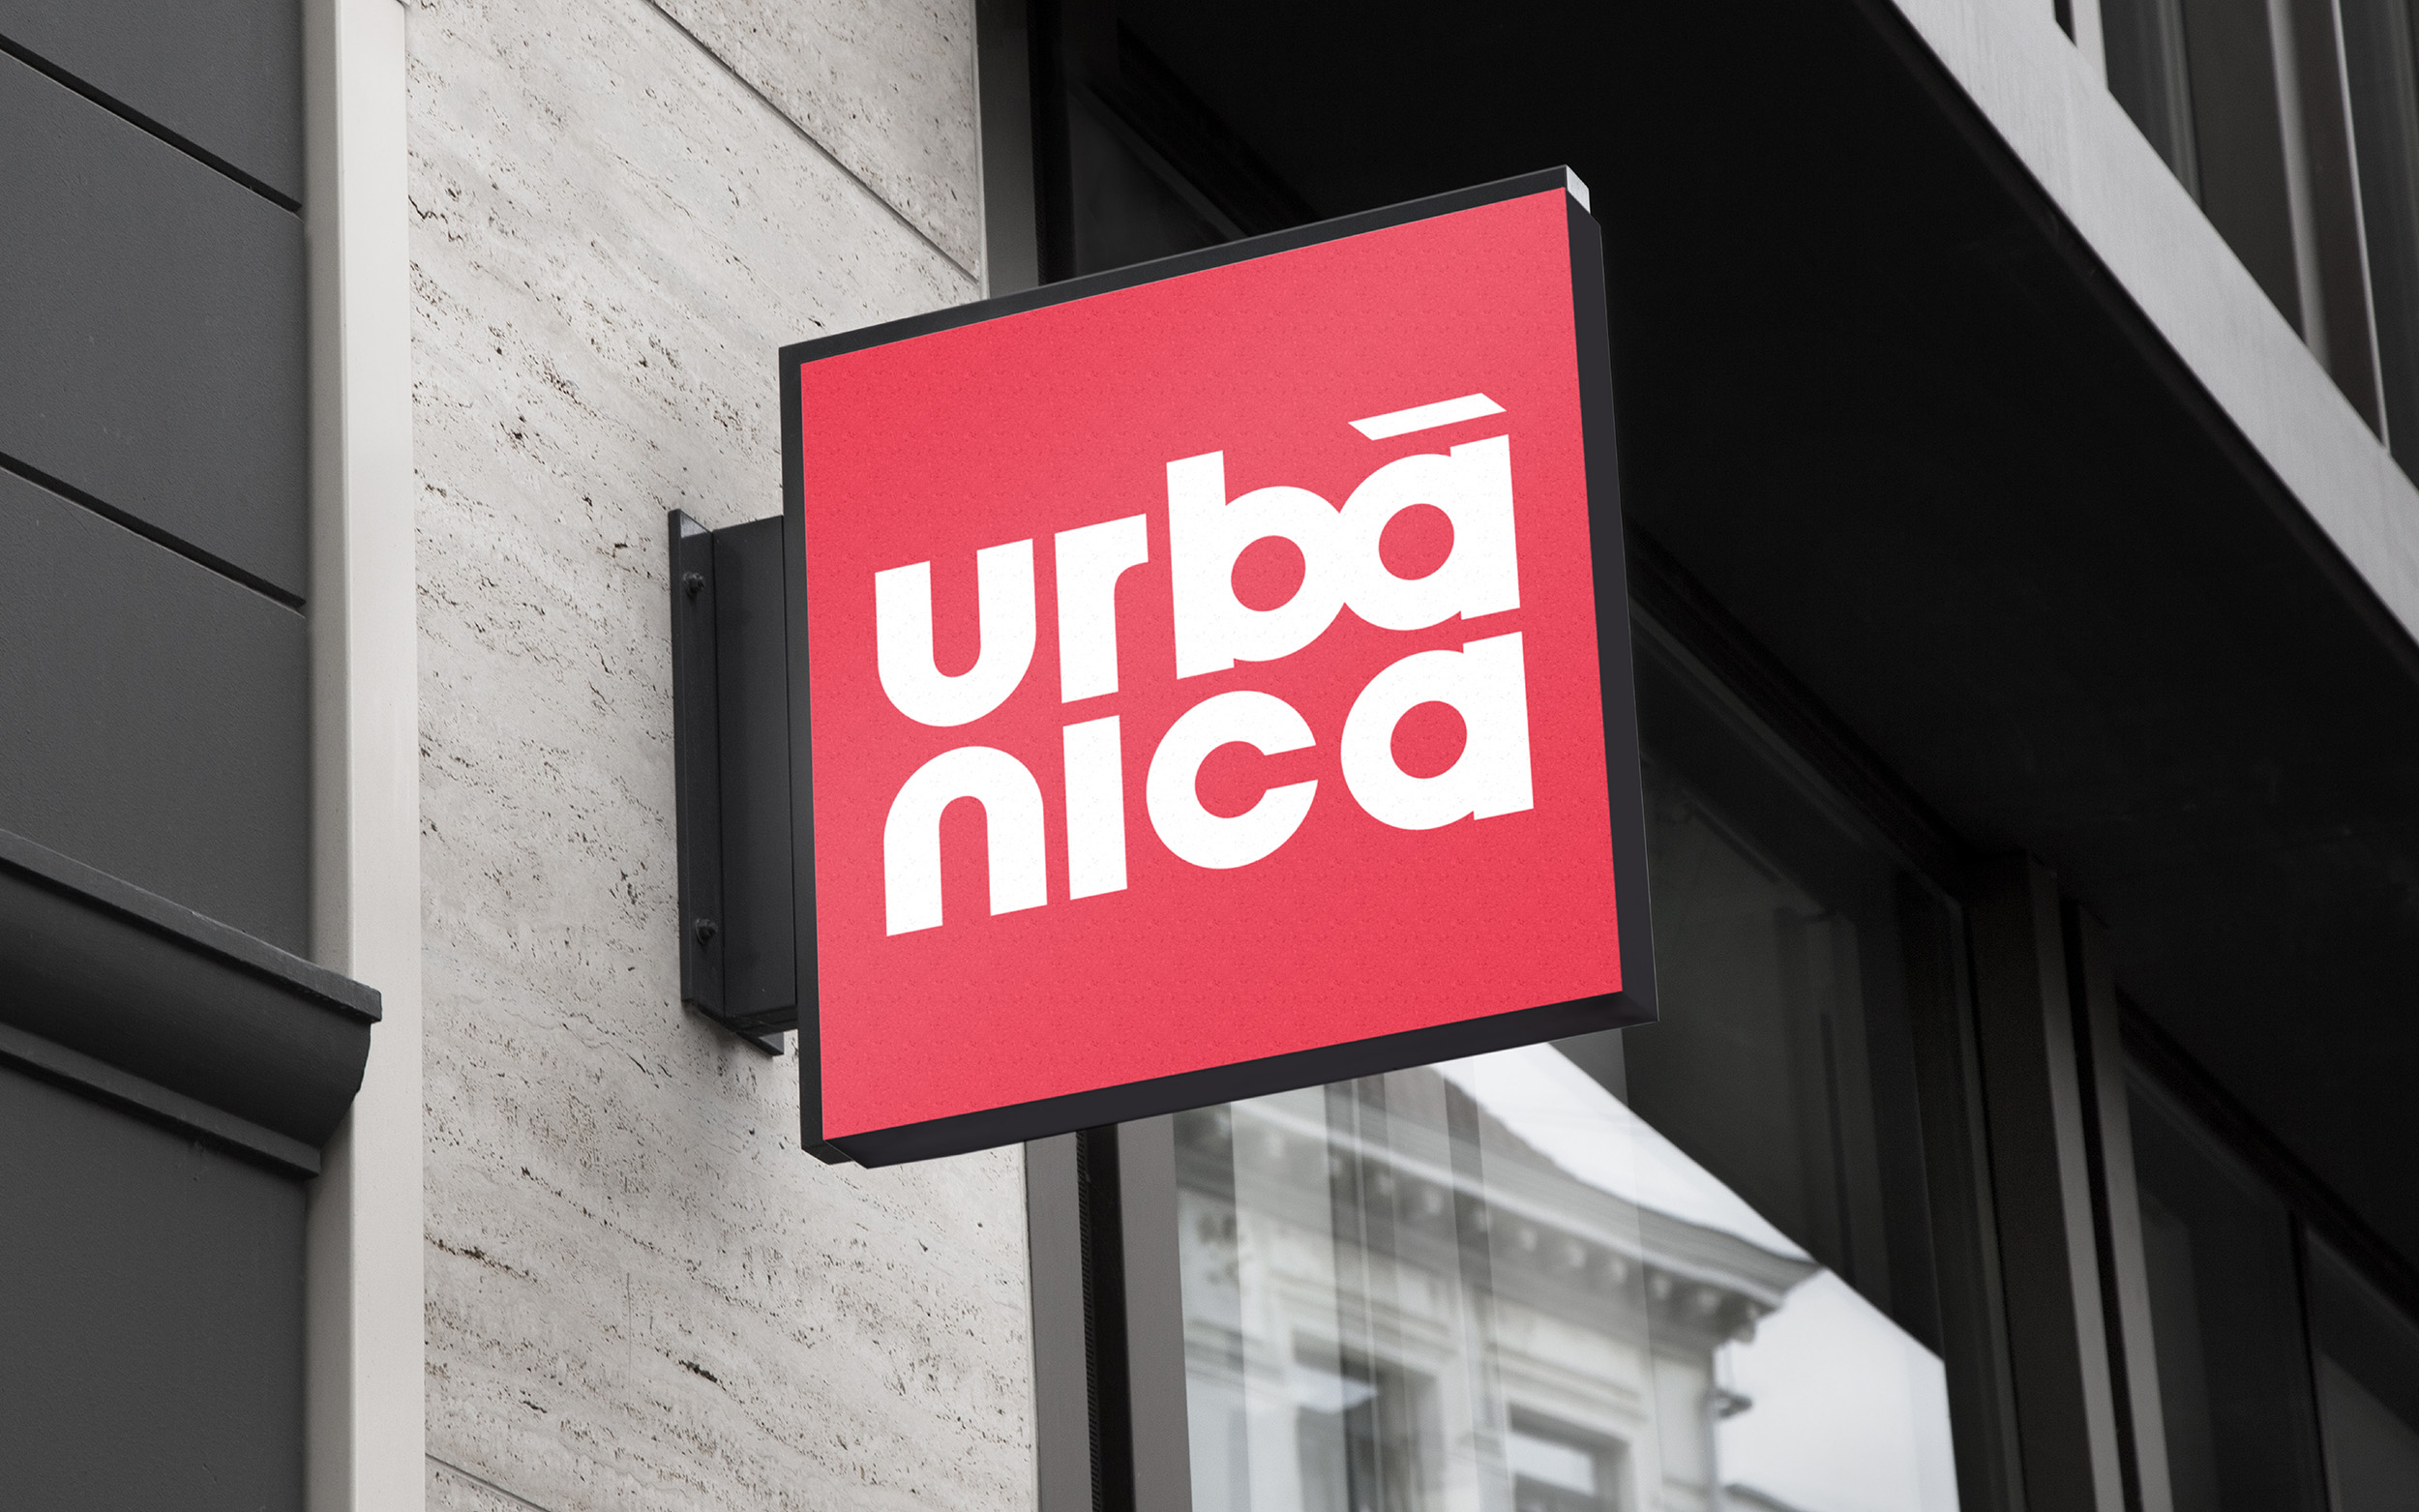 Urbânica - Projetos de Urbanismo - Branding - Naming